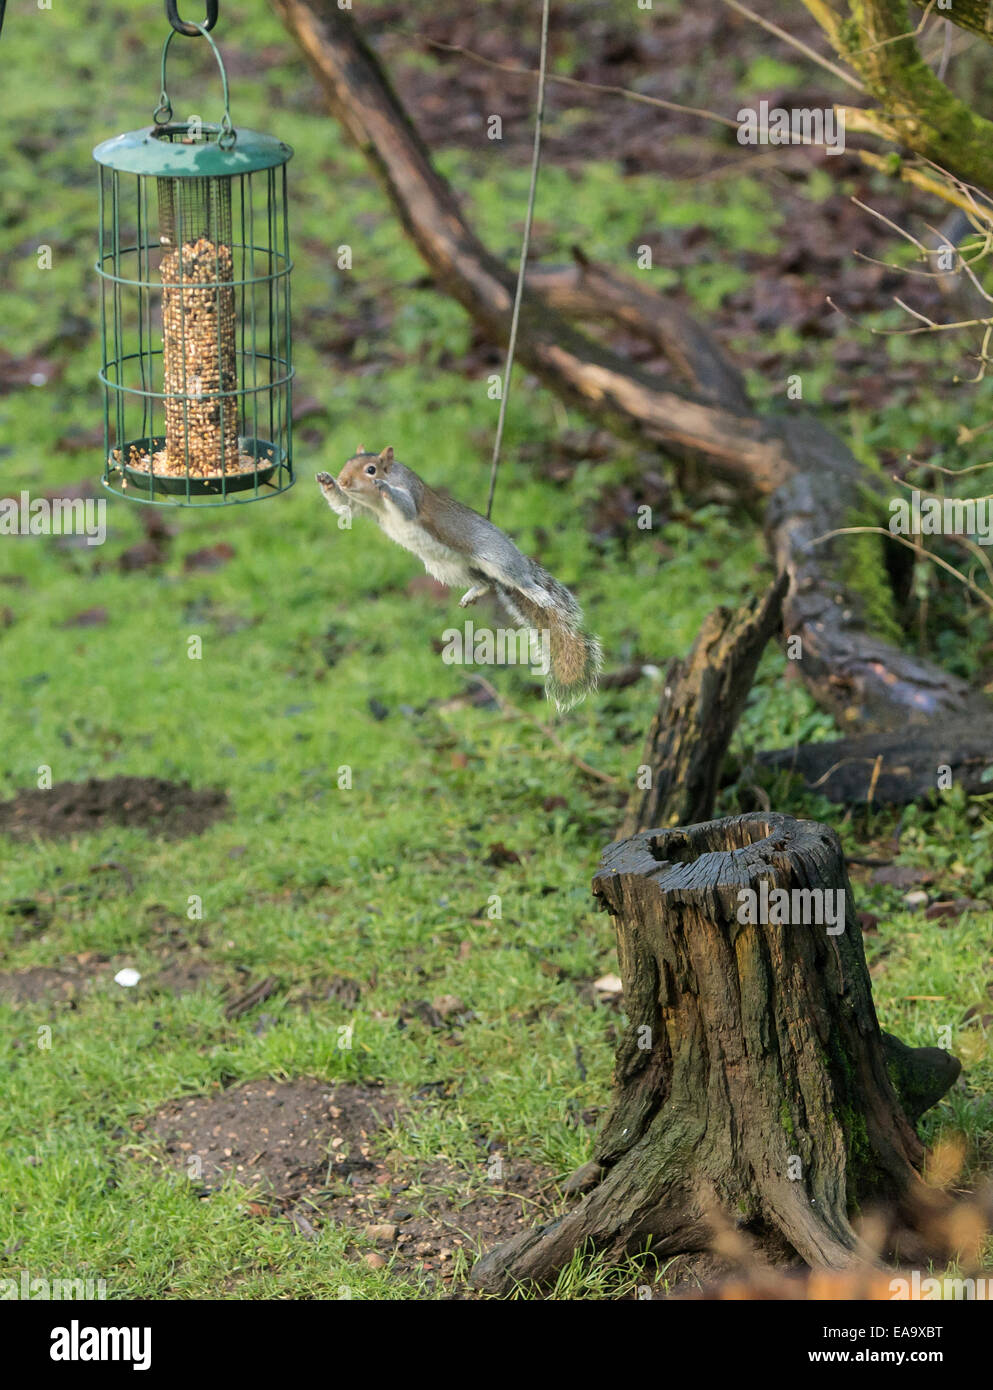 Ein Sprung des Glaubens graue Eichhörnchen springt 5ft von langen, Vogelfutter zu erreichen Stockfoto